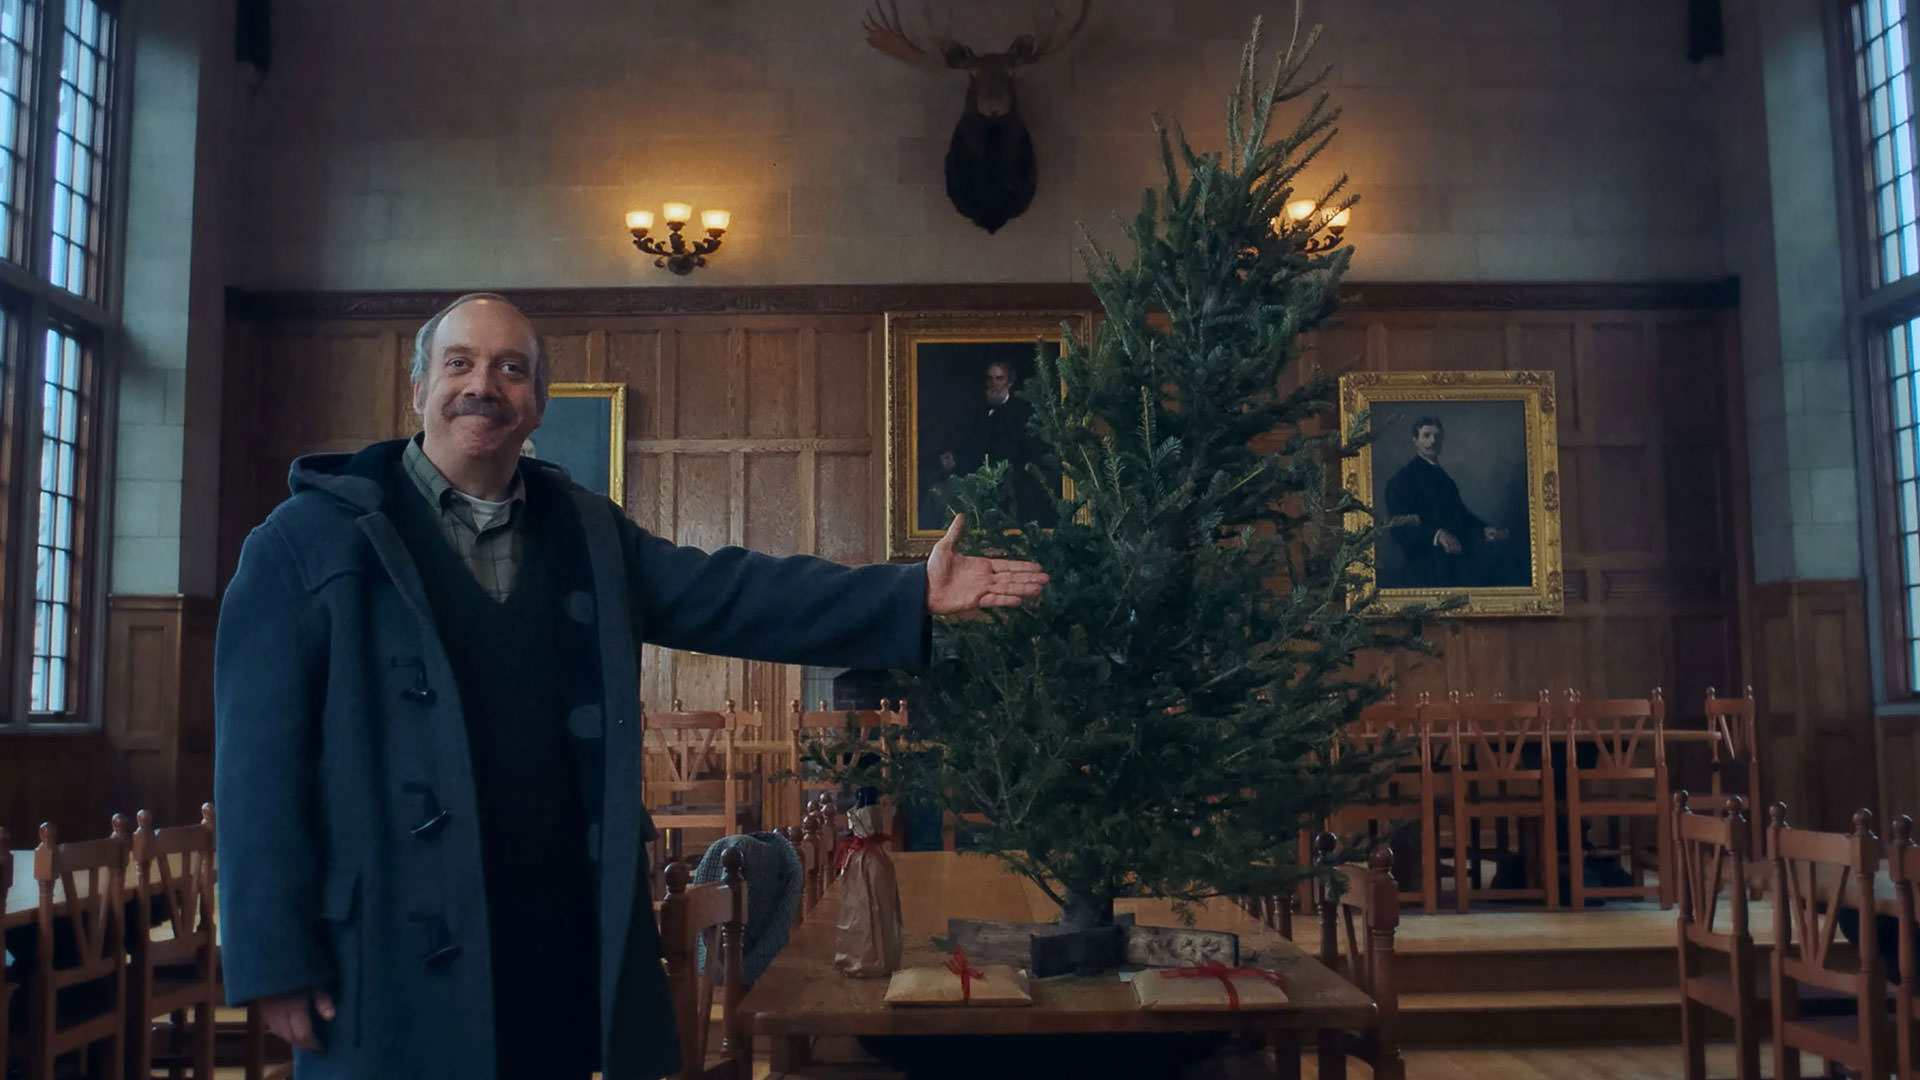 پل جیاماتی با چهره ای شاد در کنار درخت کریسمس پیچ خورده و تزئین نشده در صحنه ای از فیلم بازماندگان به کارگردانی الکساندر پین ایستاده است.